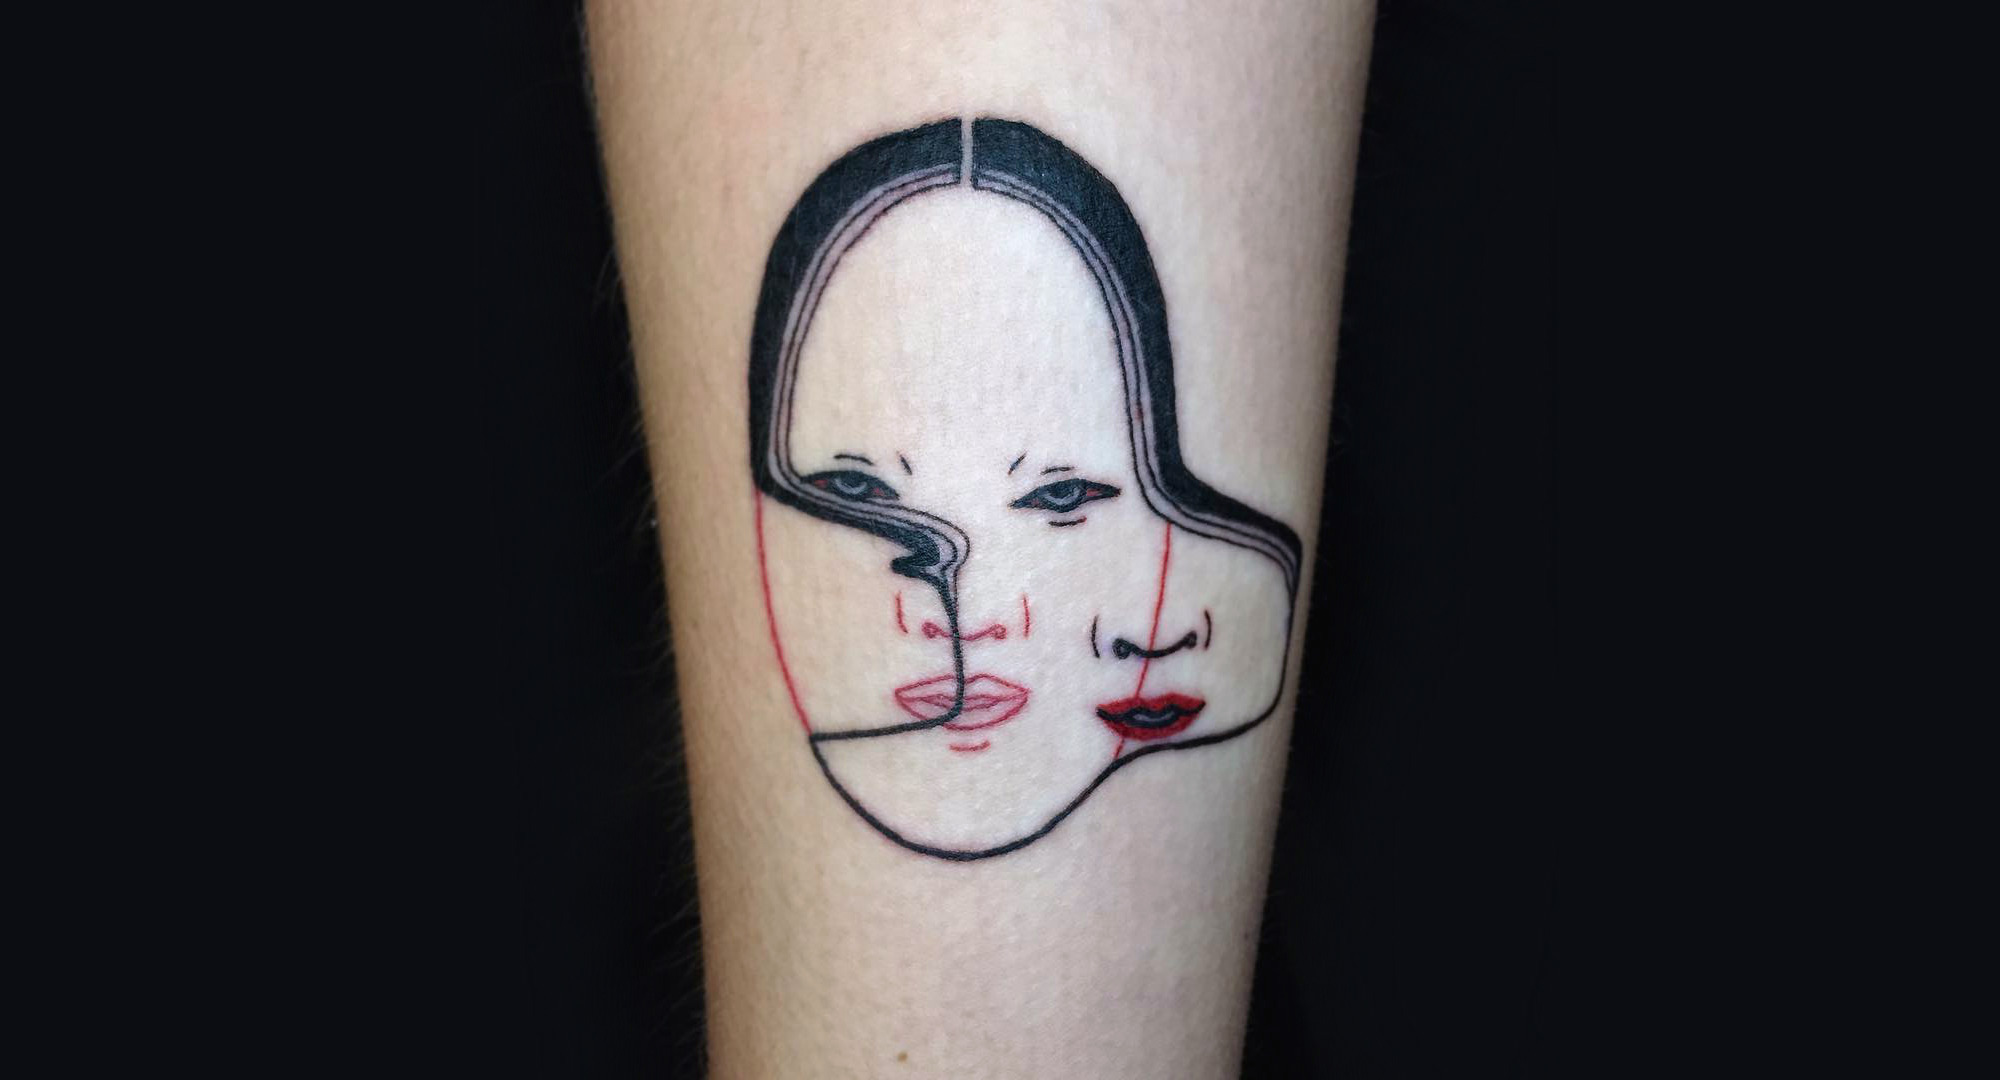 Glitched noumen mask tattoo by Suzani